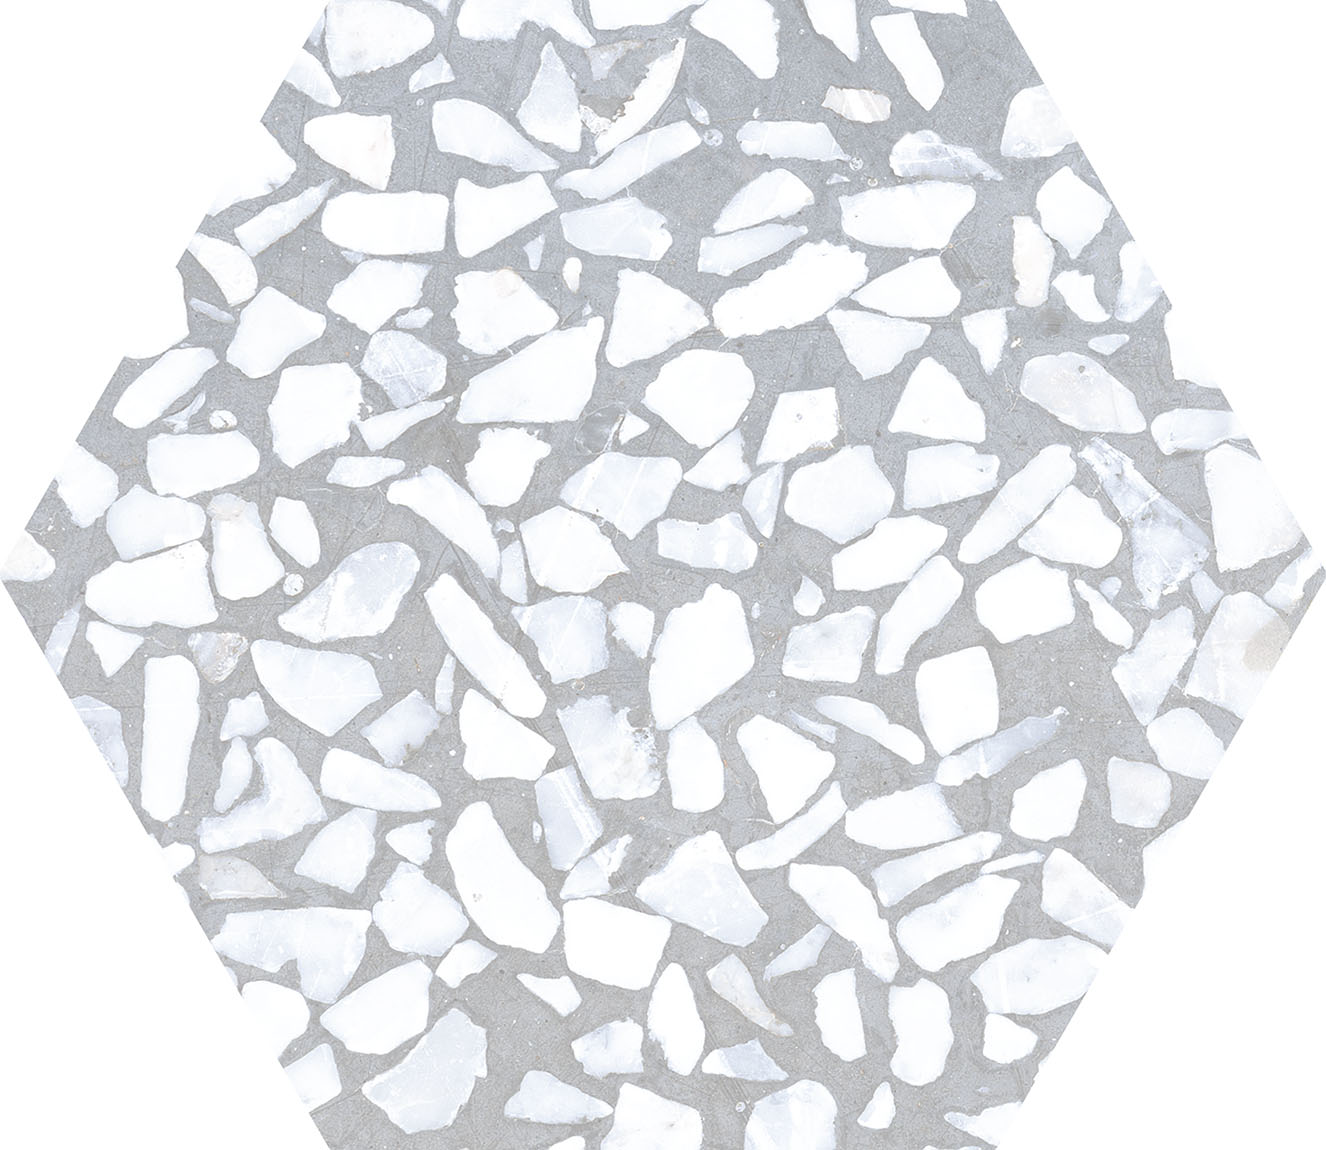 Urbanixx Gres Tarfala Bodenfliesen Terrazzooptik Hexagon Grau matt 23,2x26,7 cm rekt.